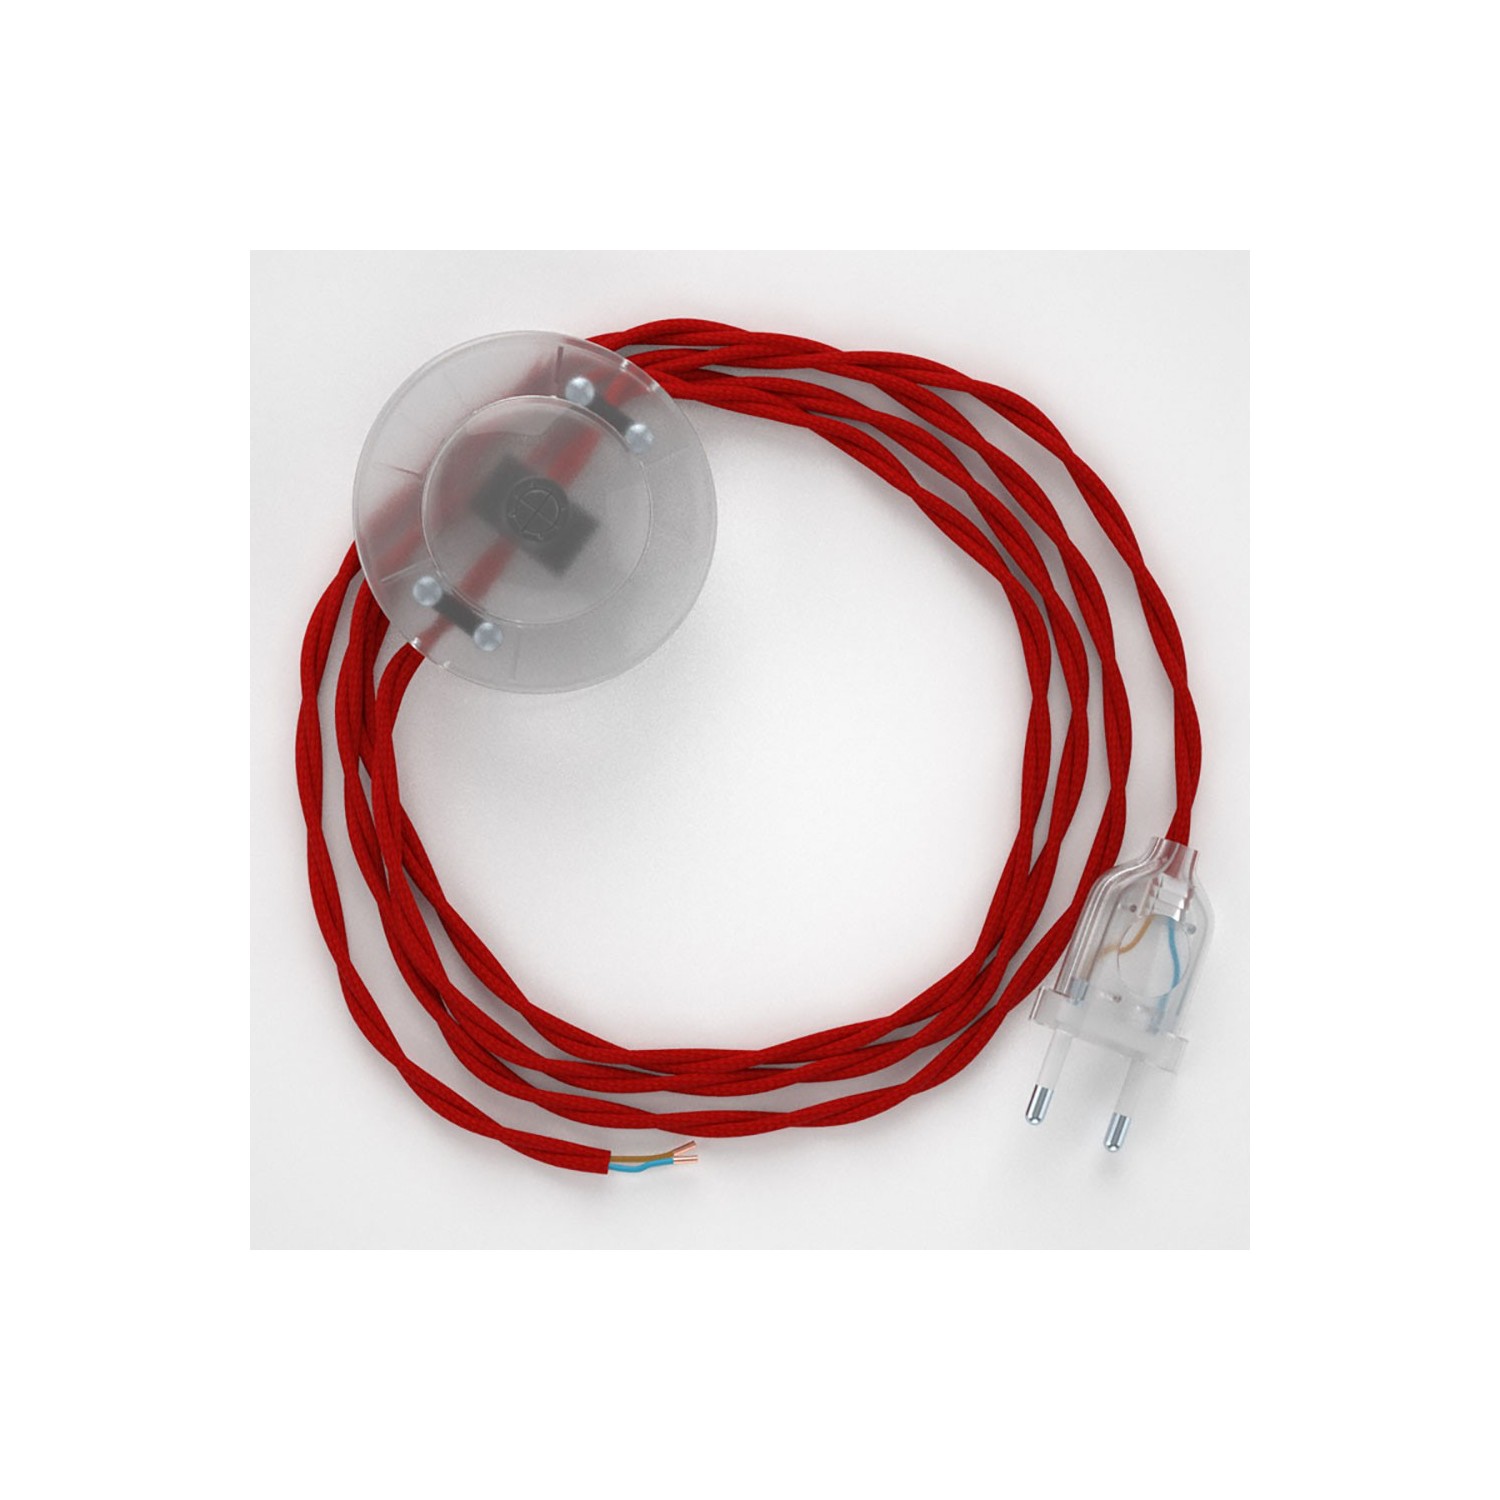 Sladdställ med fotströmbrytare, TM09 Röd Viskos 3 m. Välj färg på strömbrytare och kontakt